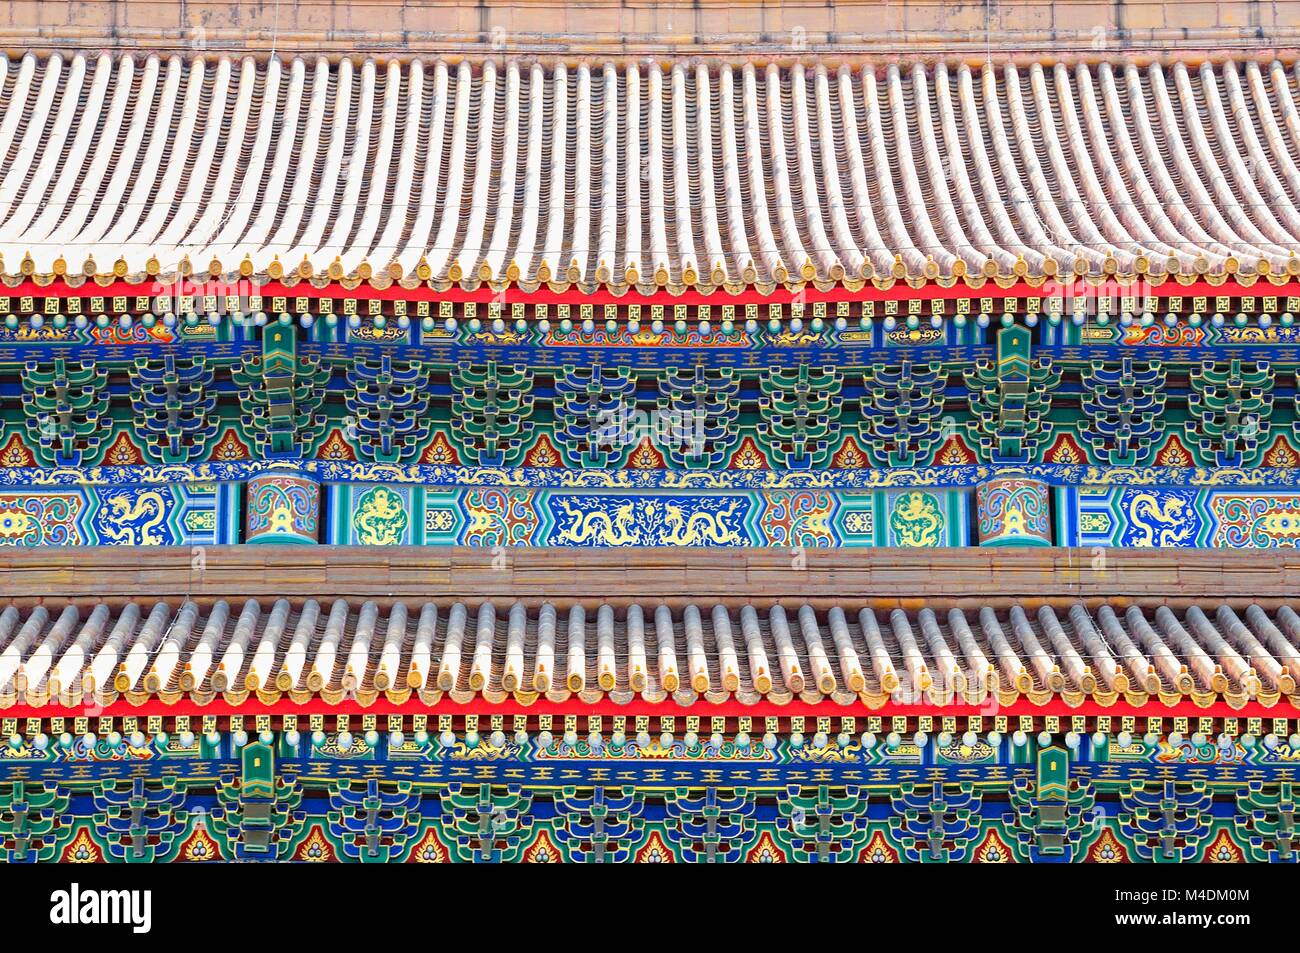 Ornements colorés sur toit pagode Chine Banque D'Images